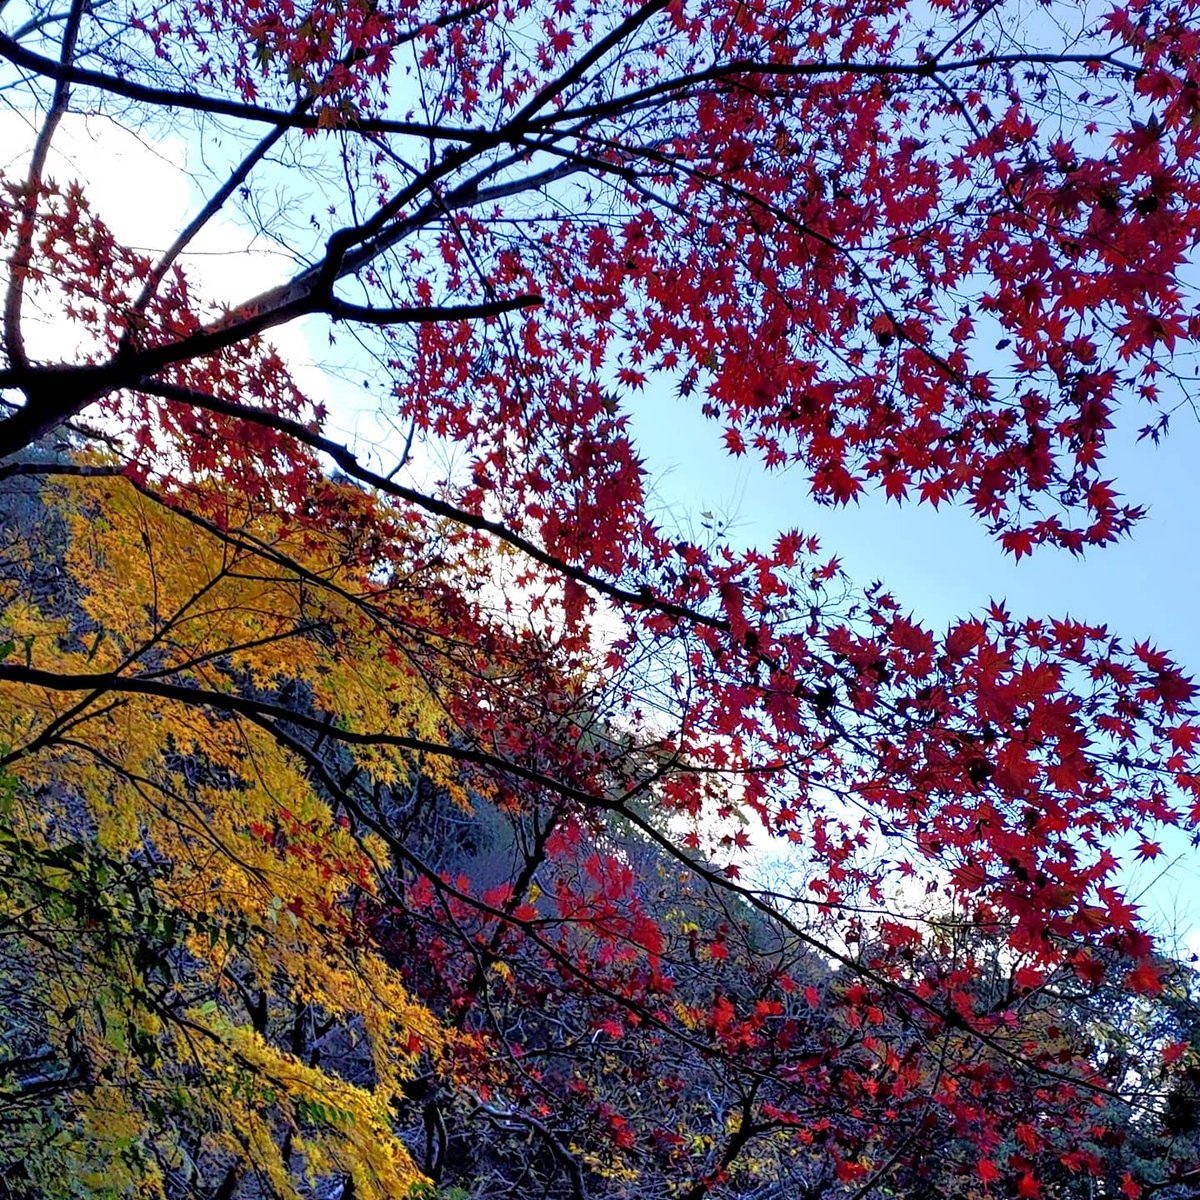 勝尾寺に紅葉を撮りに行った
まだちょっと早かったかな
#カメラ好きな人と繋がりたい#スナップ写真#写真撮ってる人と繫がりたい#キリトリ世界#写真#ファインダー越しの私の世界#photography